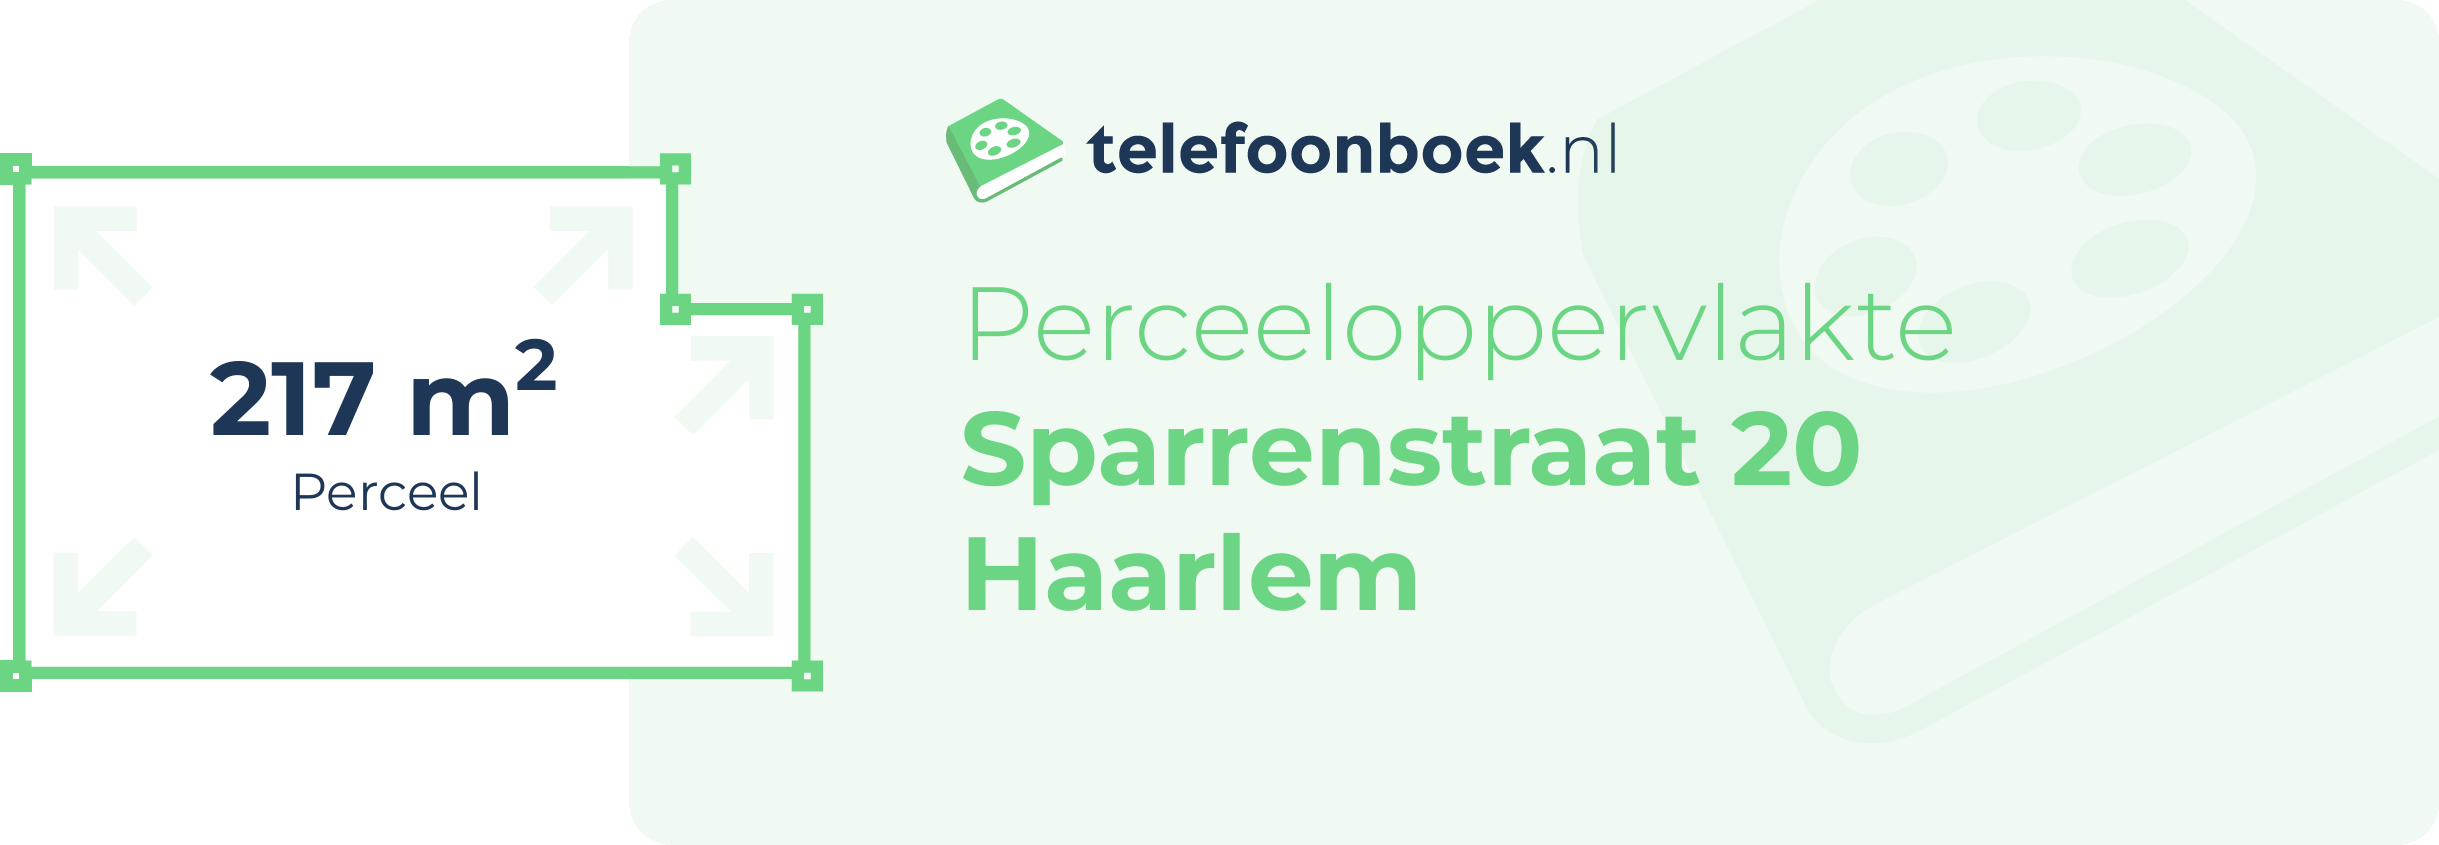 Perceeloppervlakte Sparrenstraat 20 Haarlem